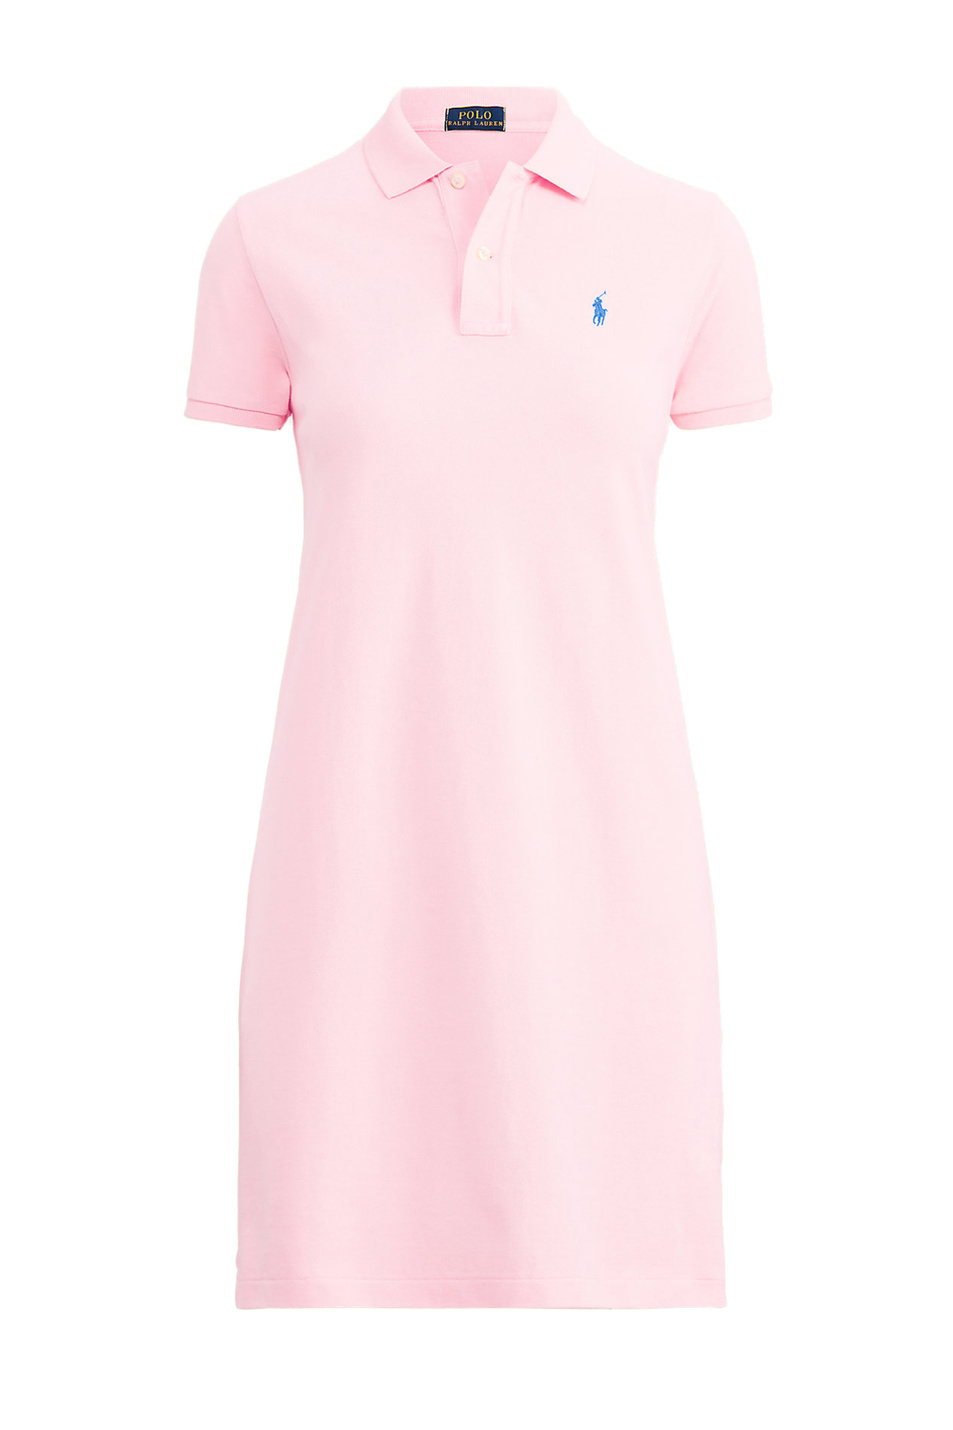 Polo Ralph Lauren Платье-поло с фирменной вышивкой на груди (цвет ), артикул 211799490012 | Фото 1